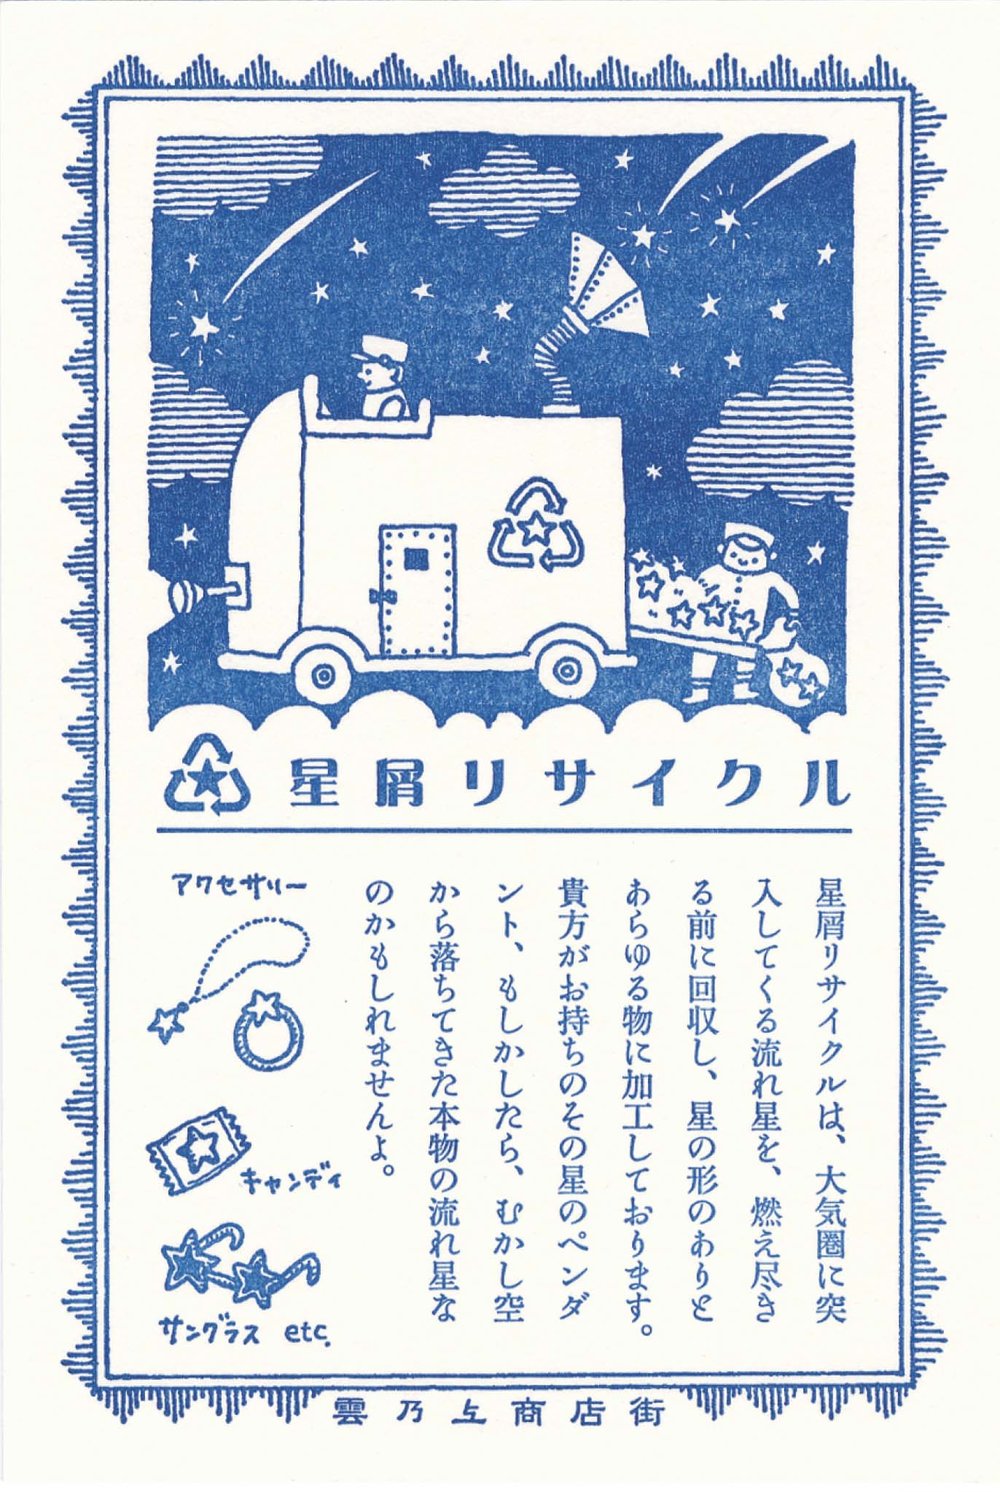 Stardust Recycling Postcard / Kyupodo